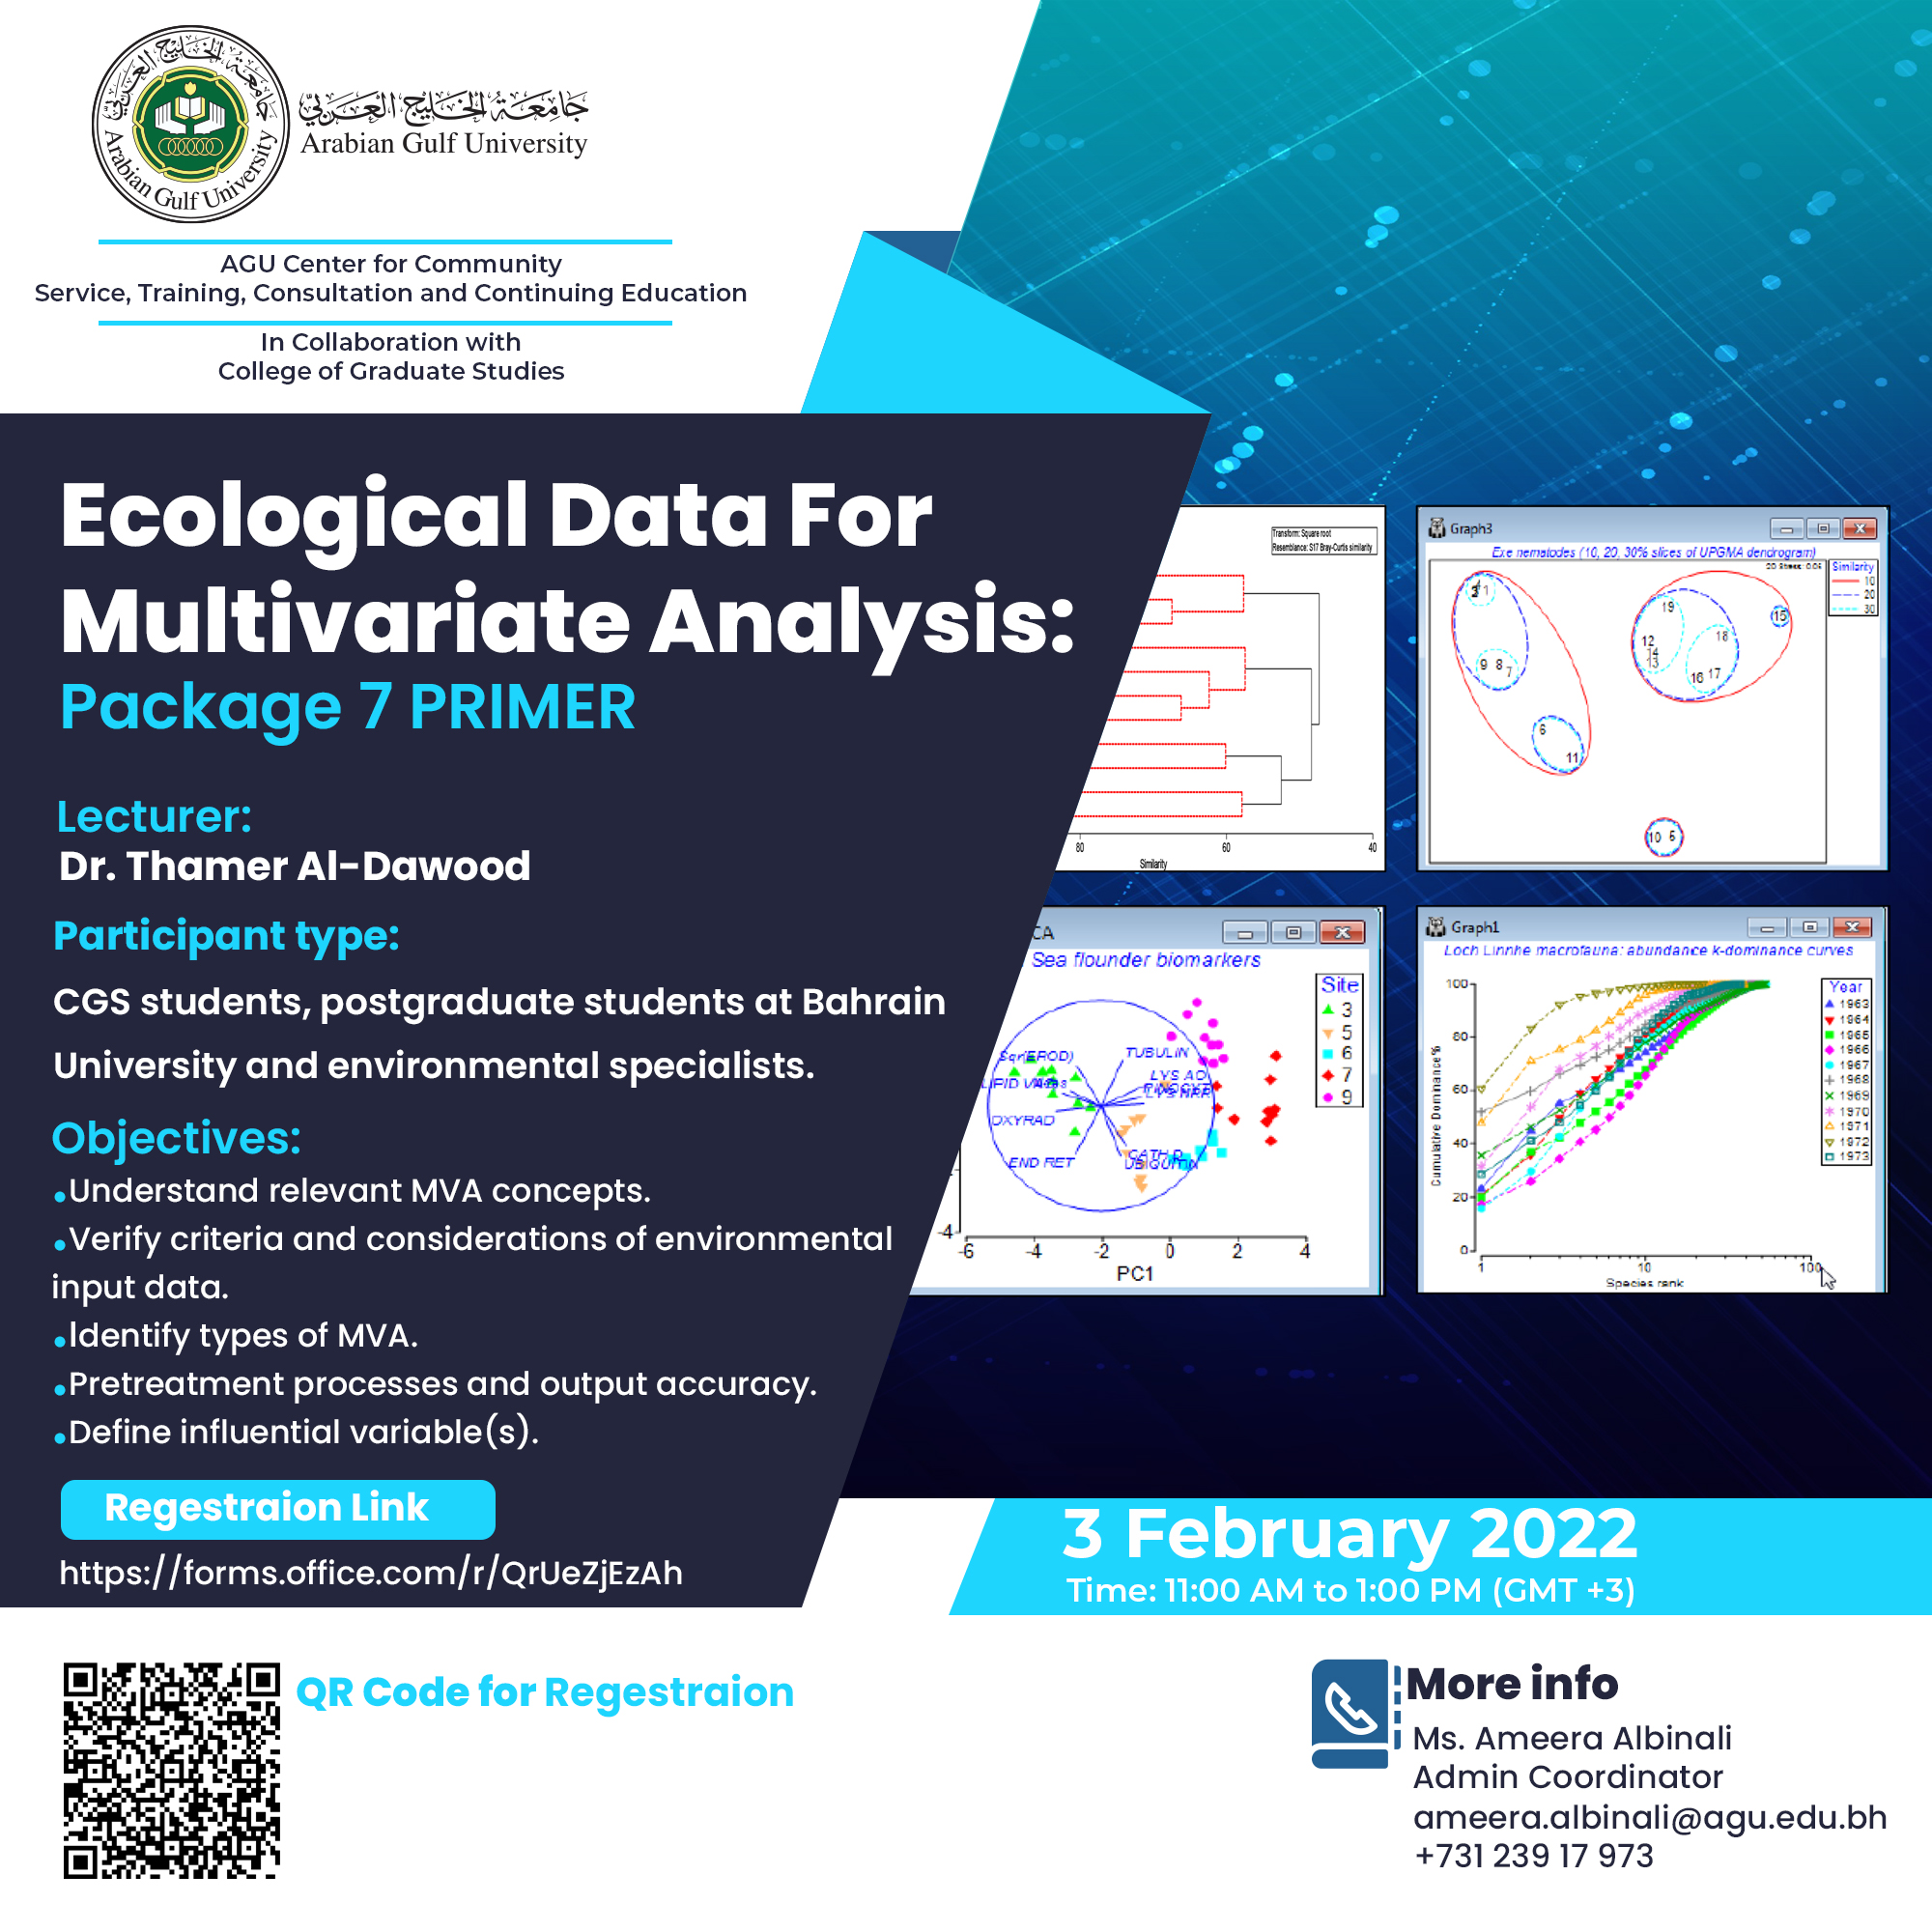 Ecological Data for Multivariate Analysis: Package 7 Primer